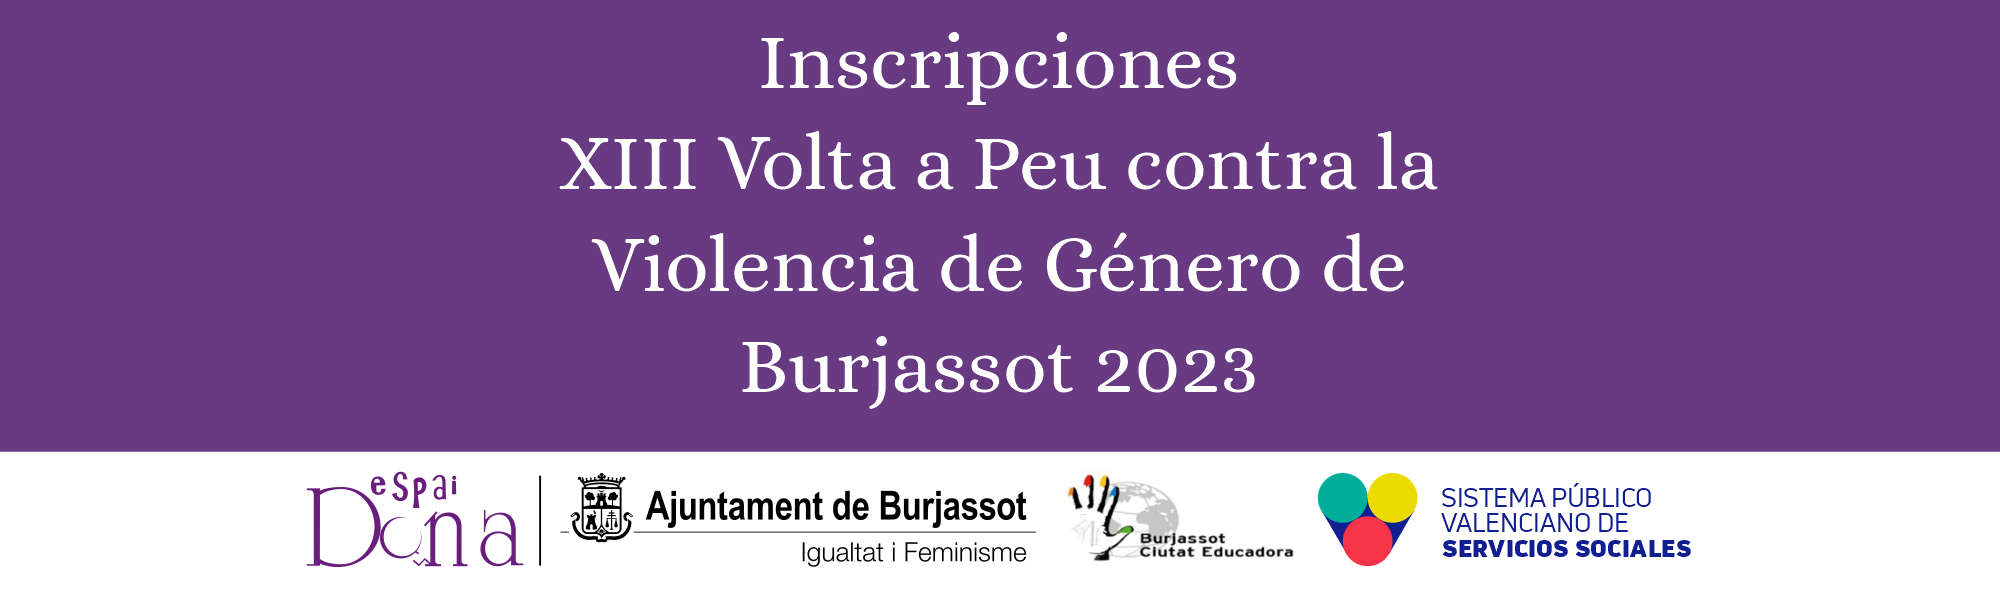 Inscripcions XIII Volta a Peu contra la Violència de Gènere de Burjassot 2023